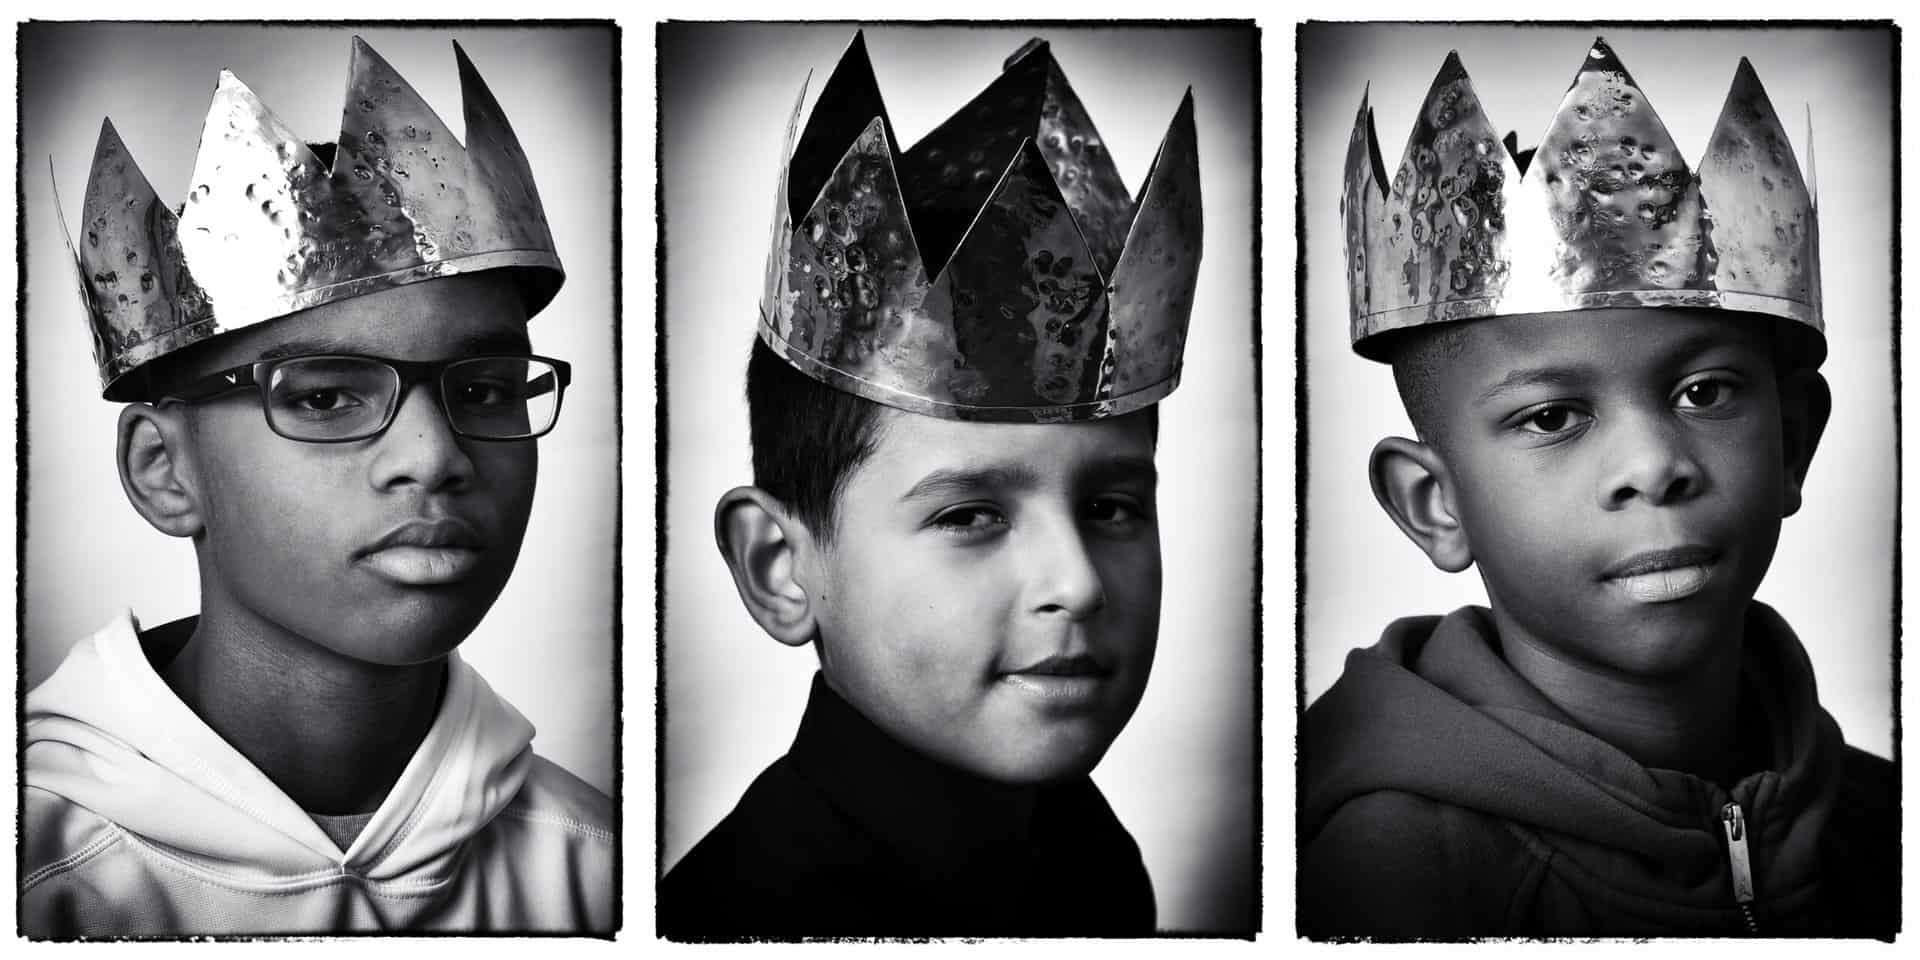 Three Kings by Erik James Montgomery